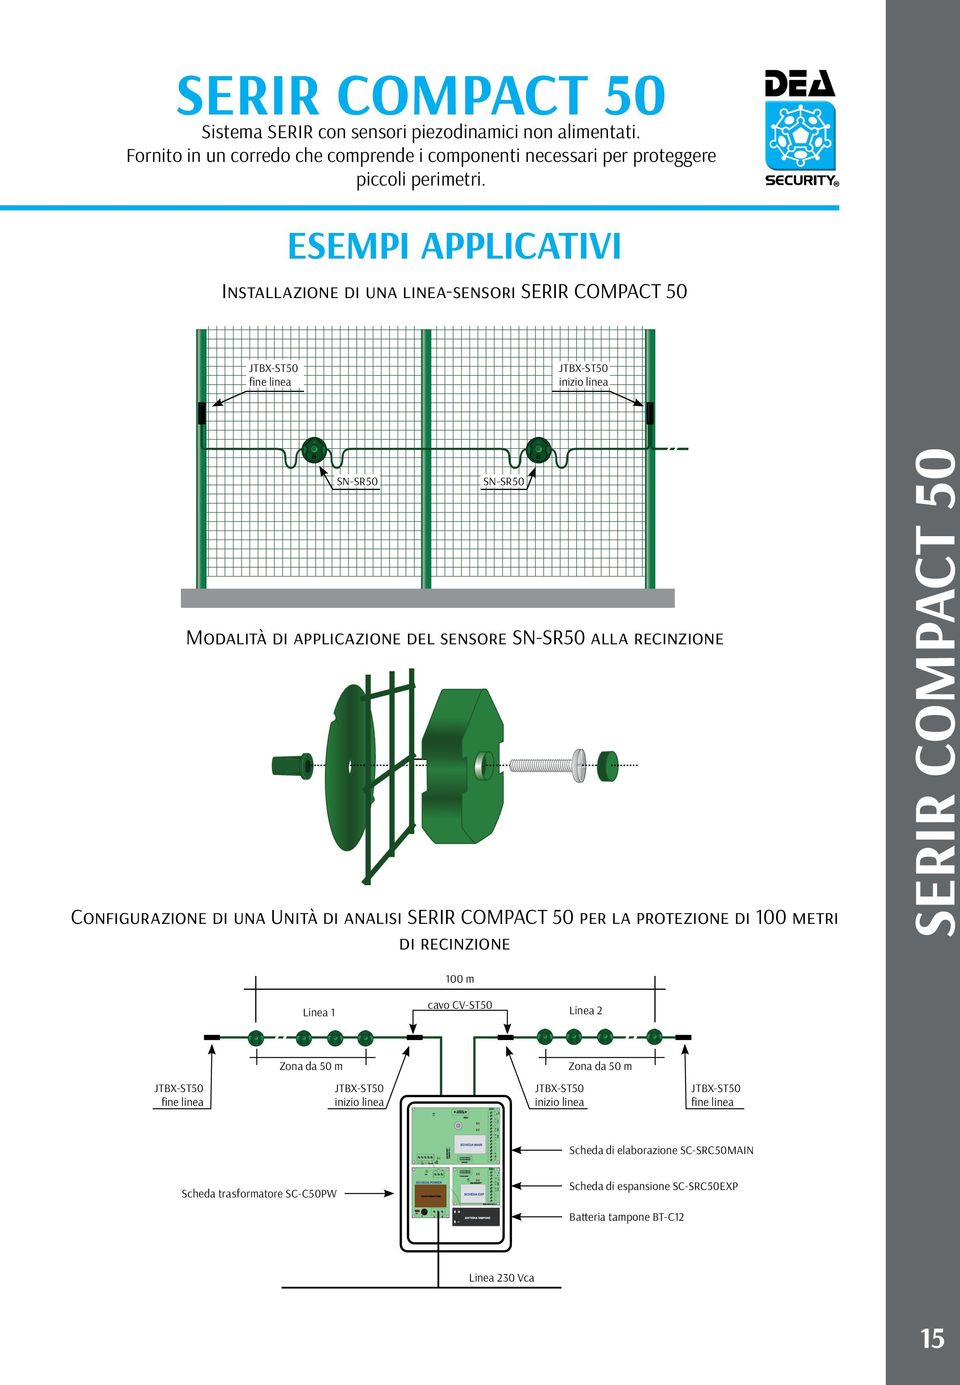 ESEMPI APPLICATIVI Installazione di una linea-sensori SERIR COMPACT 50 JTBX-ST50 fine linea JTBX-ST50 inizio linea SN-SR50 SN-SR50 Modalità di applicazione del sensore SN-SR50 alla recinzione